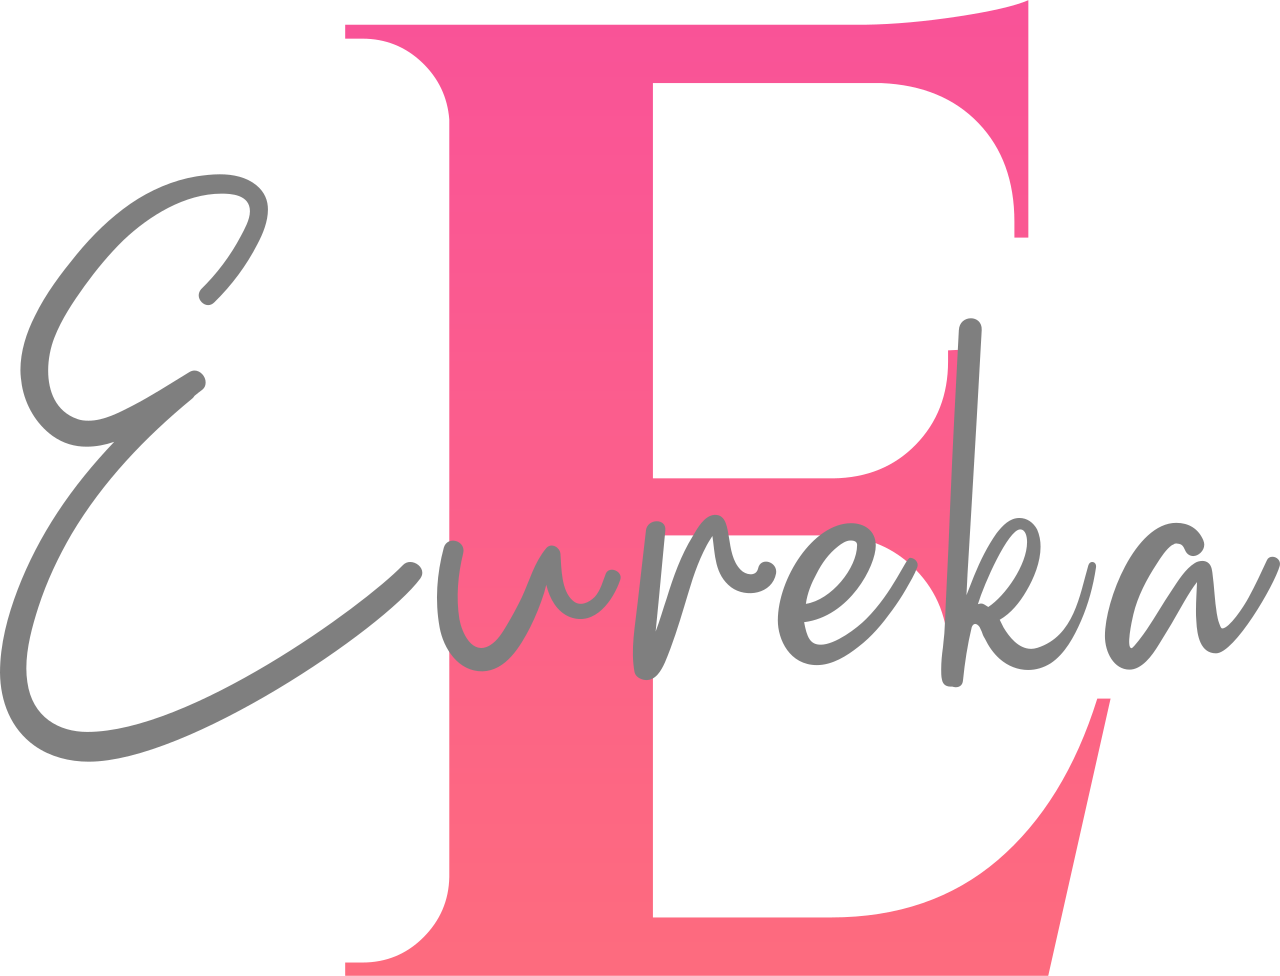 Eureka 's logo